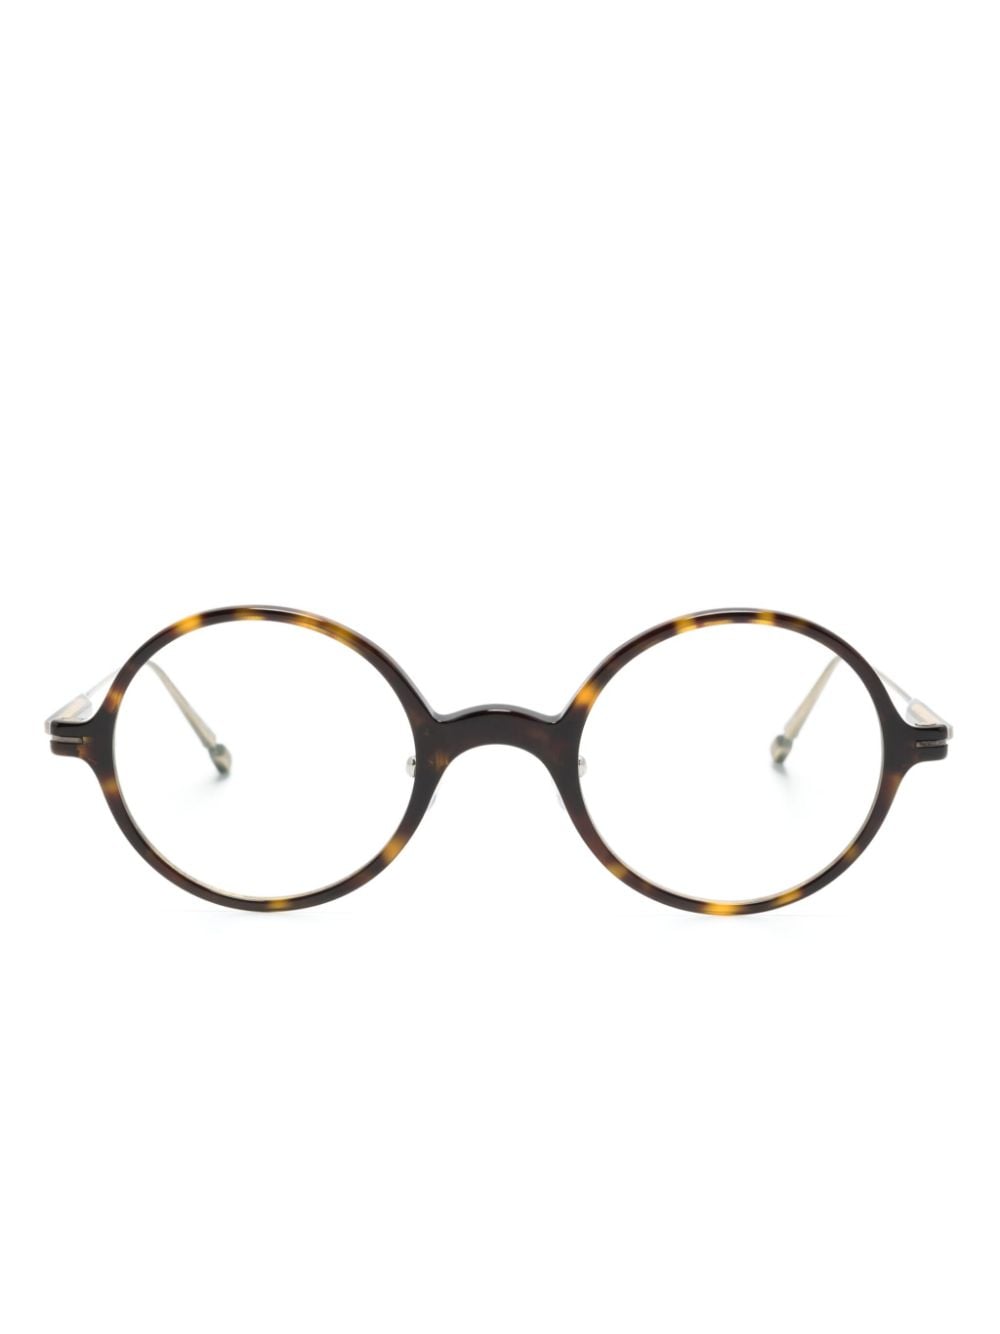 M2054 round-frame glasses